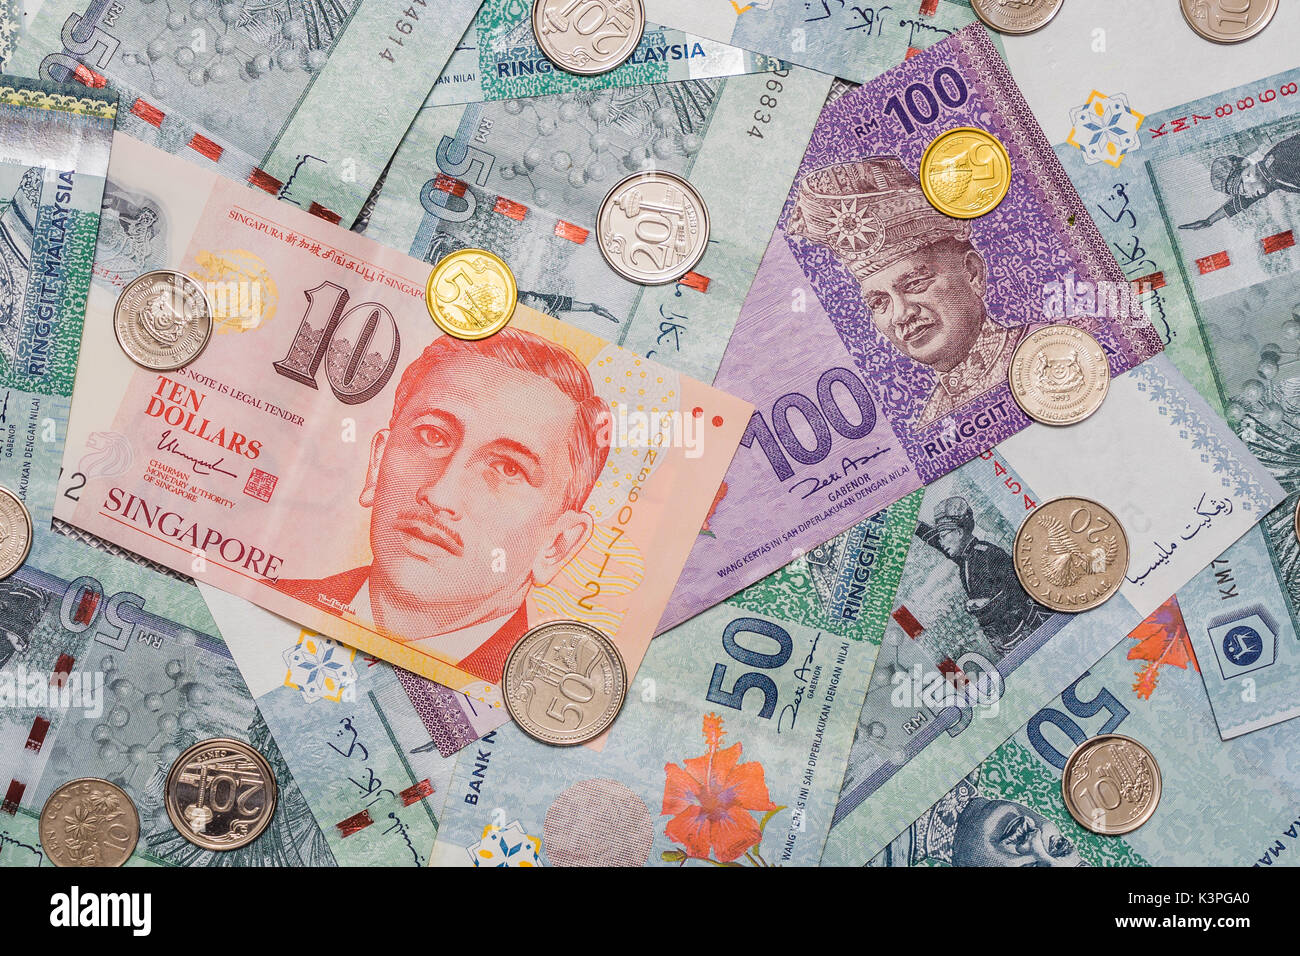 Singapur Dollar und -Münzen auf der Oberseite des Malaysischen Ringgit Währung auf Muster Hintergrund, Malaysische Ringgit Symbol ist RM Währungscode MYR, Singapur Dol Stockfoto